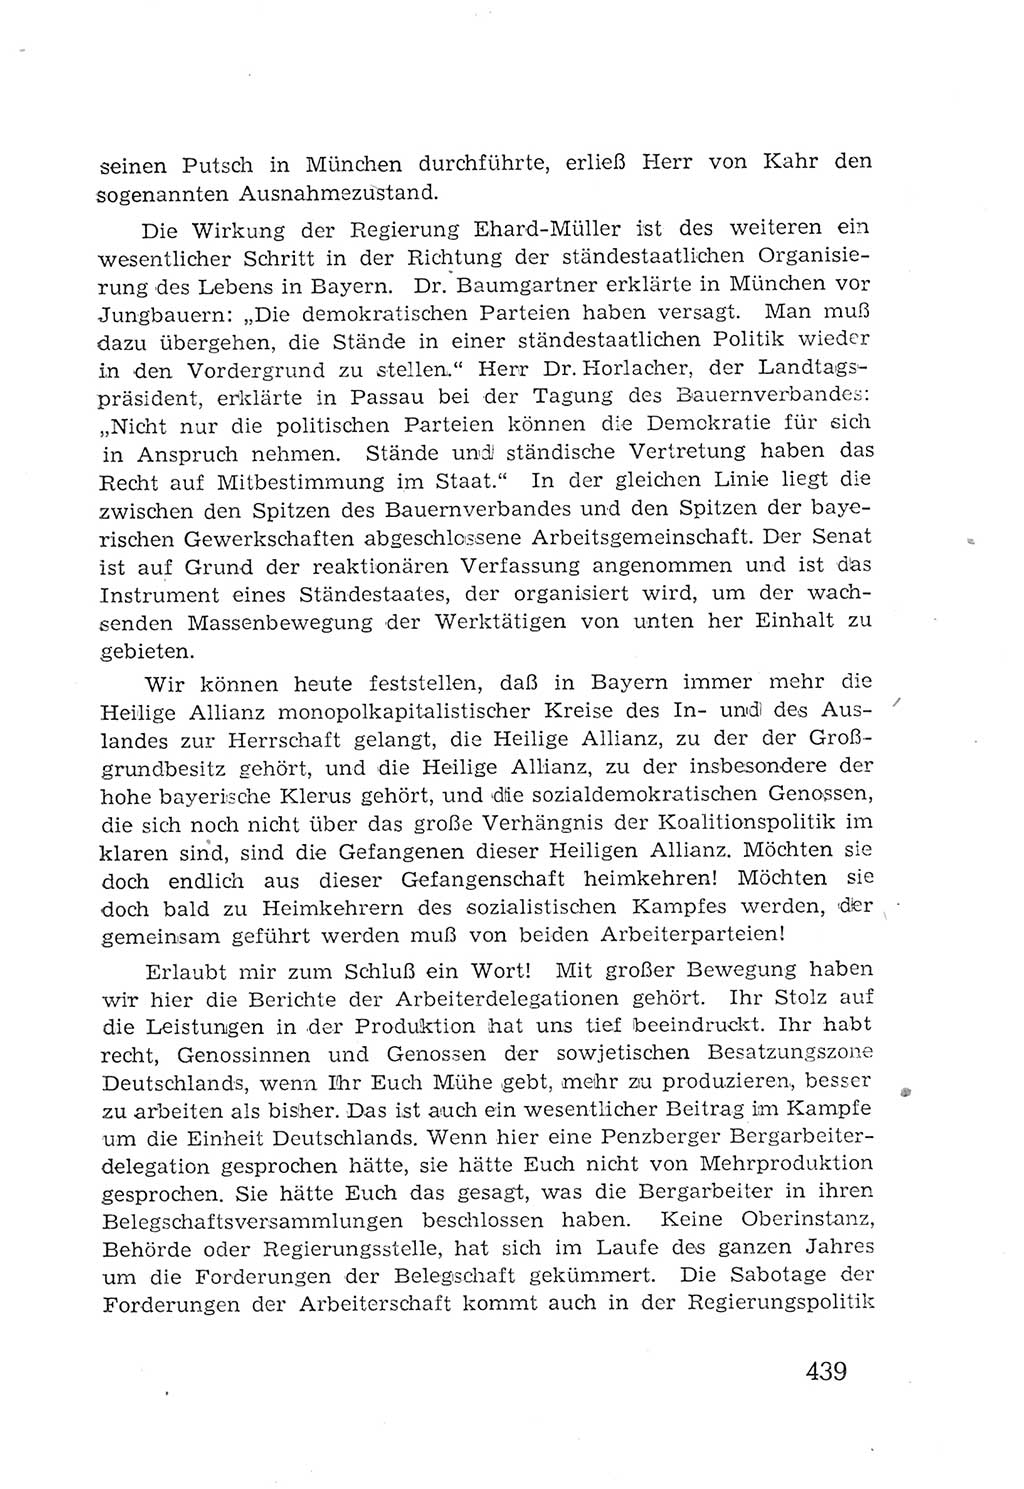 Protokoll der Verhandlungen des 2. Parteitages der Sozialistischen Einheitspartei Deutschlands (SED) [Sowjetische Besatzungszone (SBZ) Deutschlands] 1947, Seite 439 (Prot. Verh. 2. PT SED SBZ Dtl. 1947, S. 439)